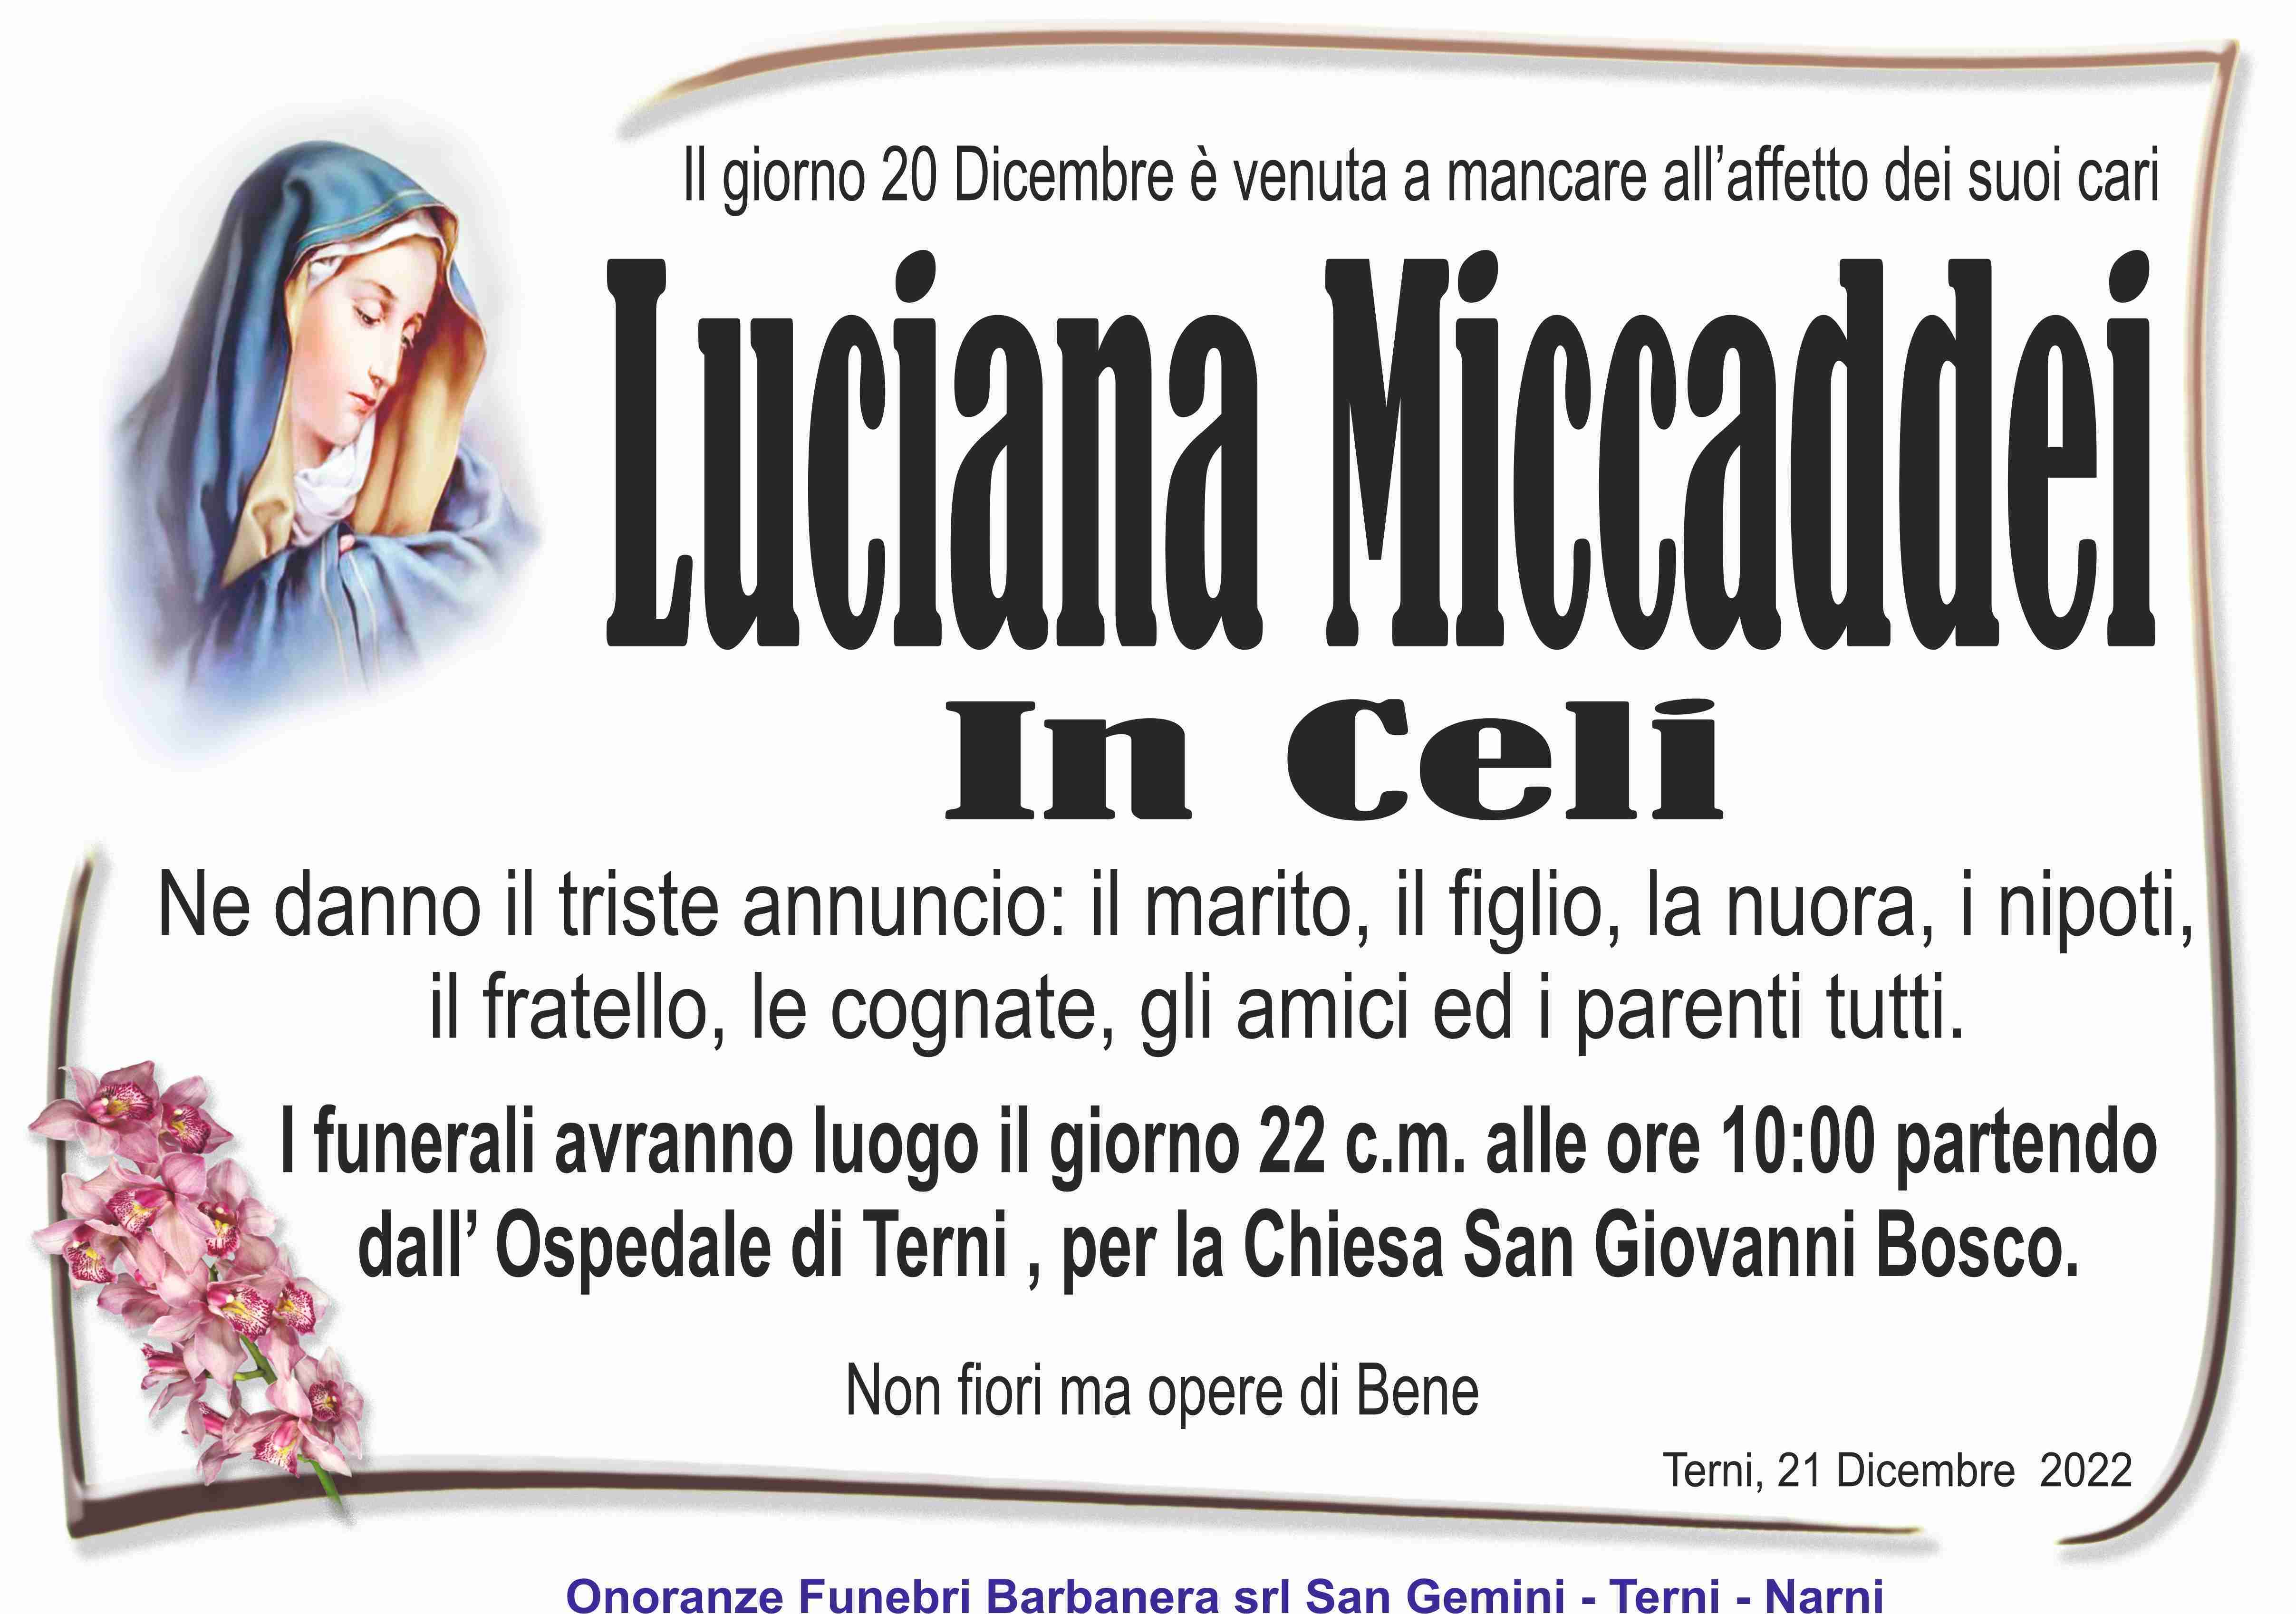 Miccaddei Luciana